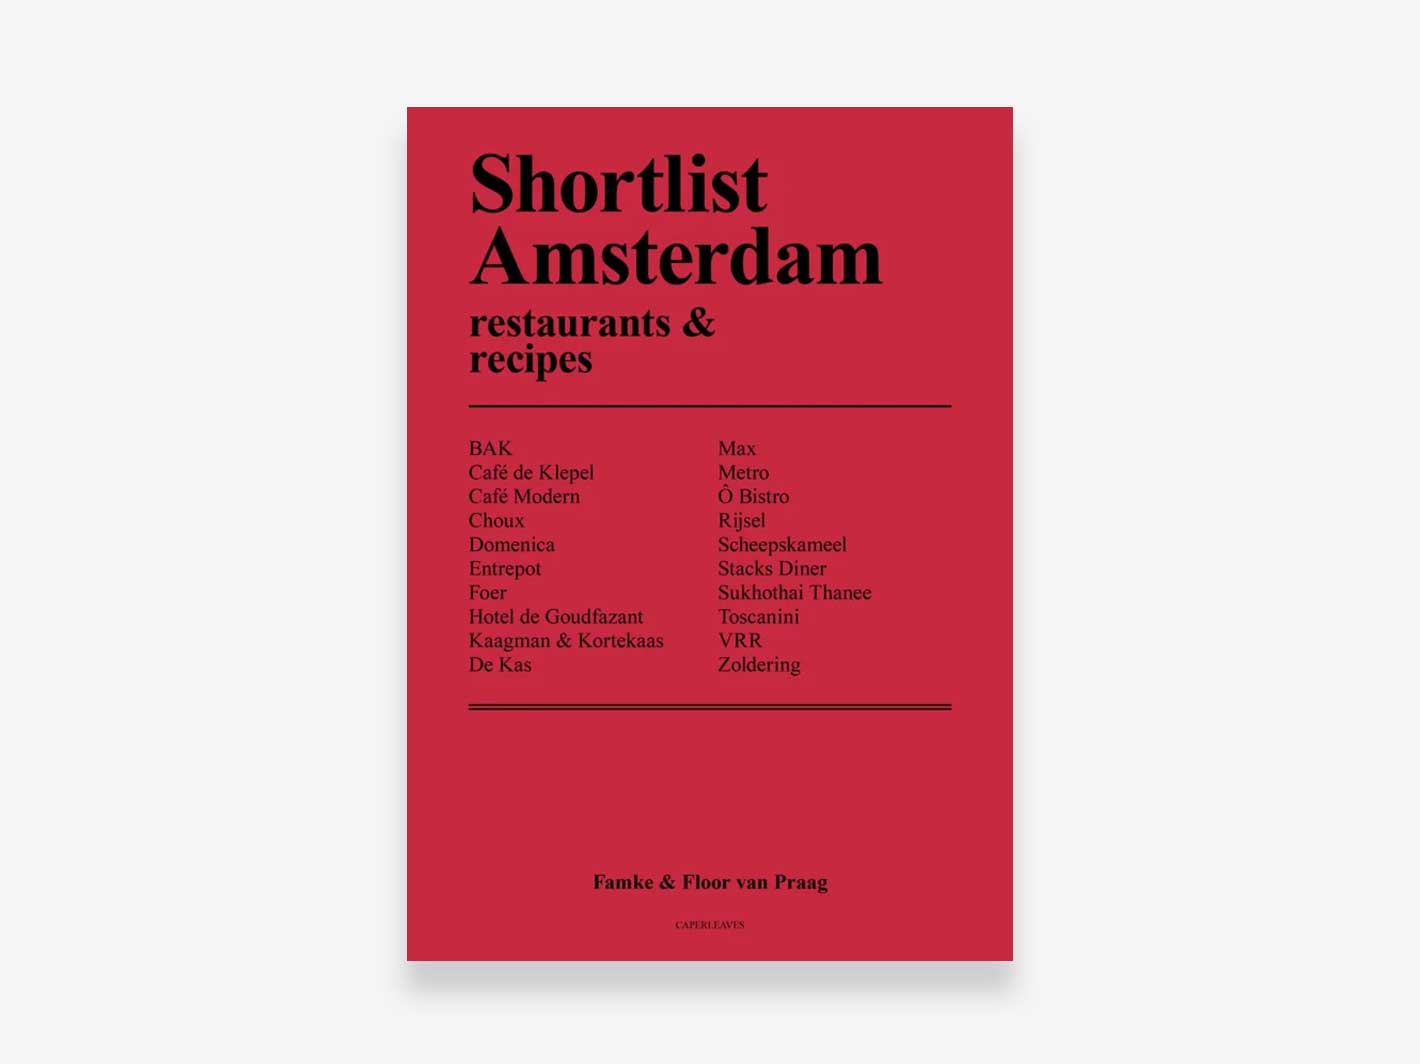 Shortlist Amsterdam: restaurants & recipes